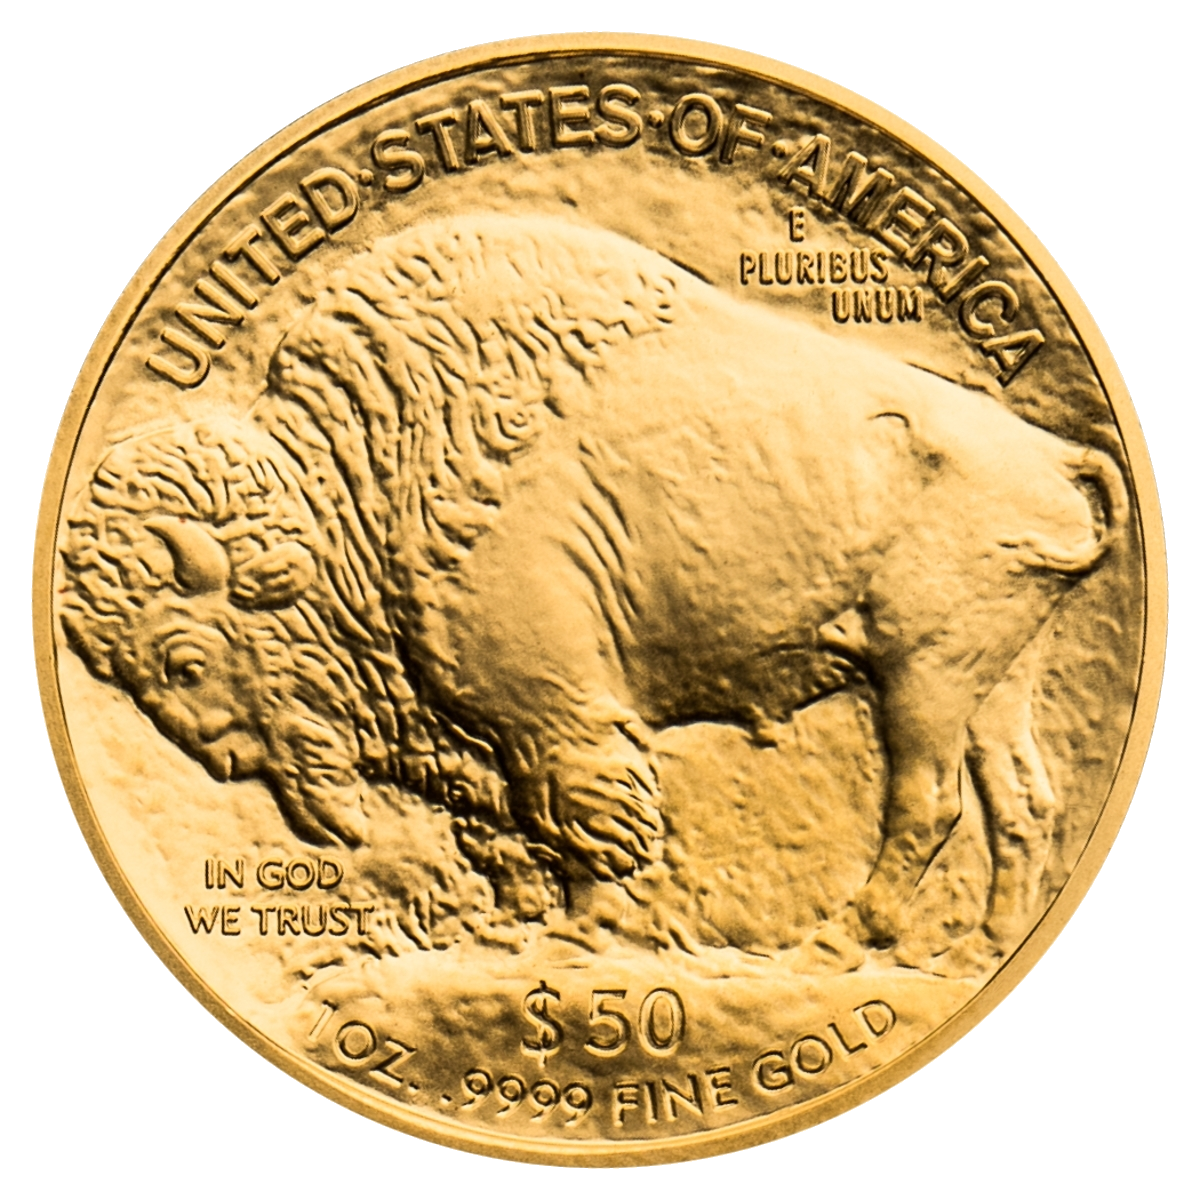 1 oz Gold Buffalo Gold Coin